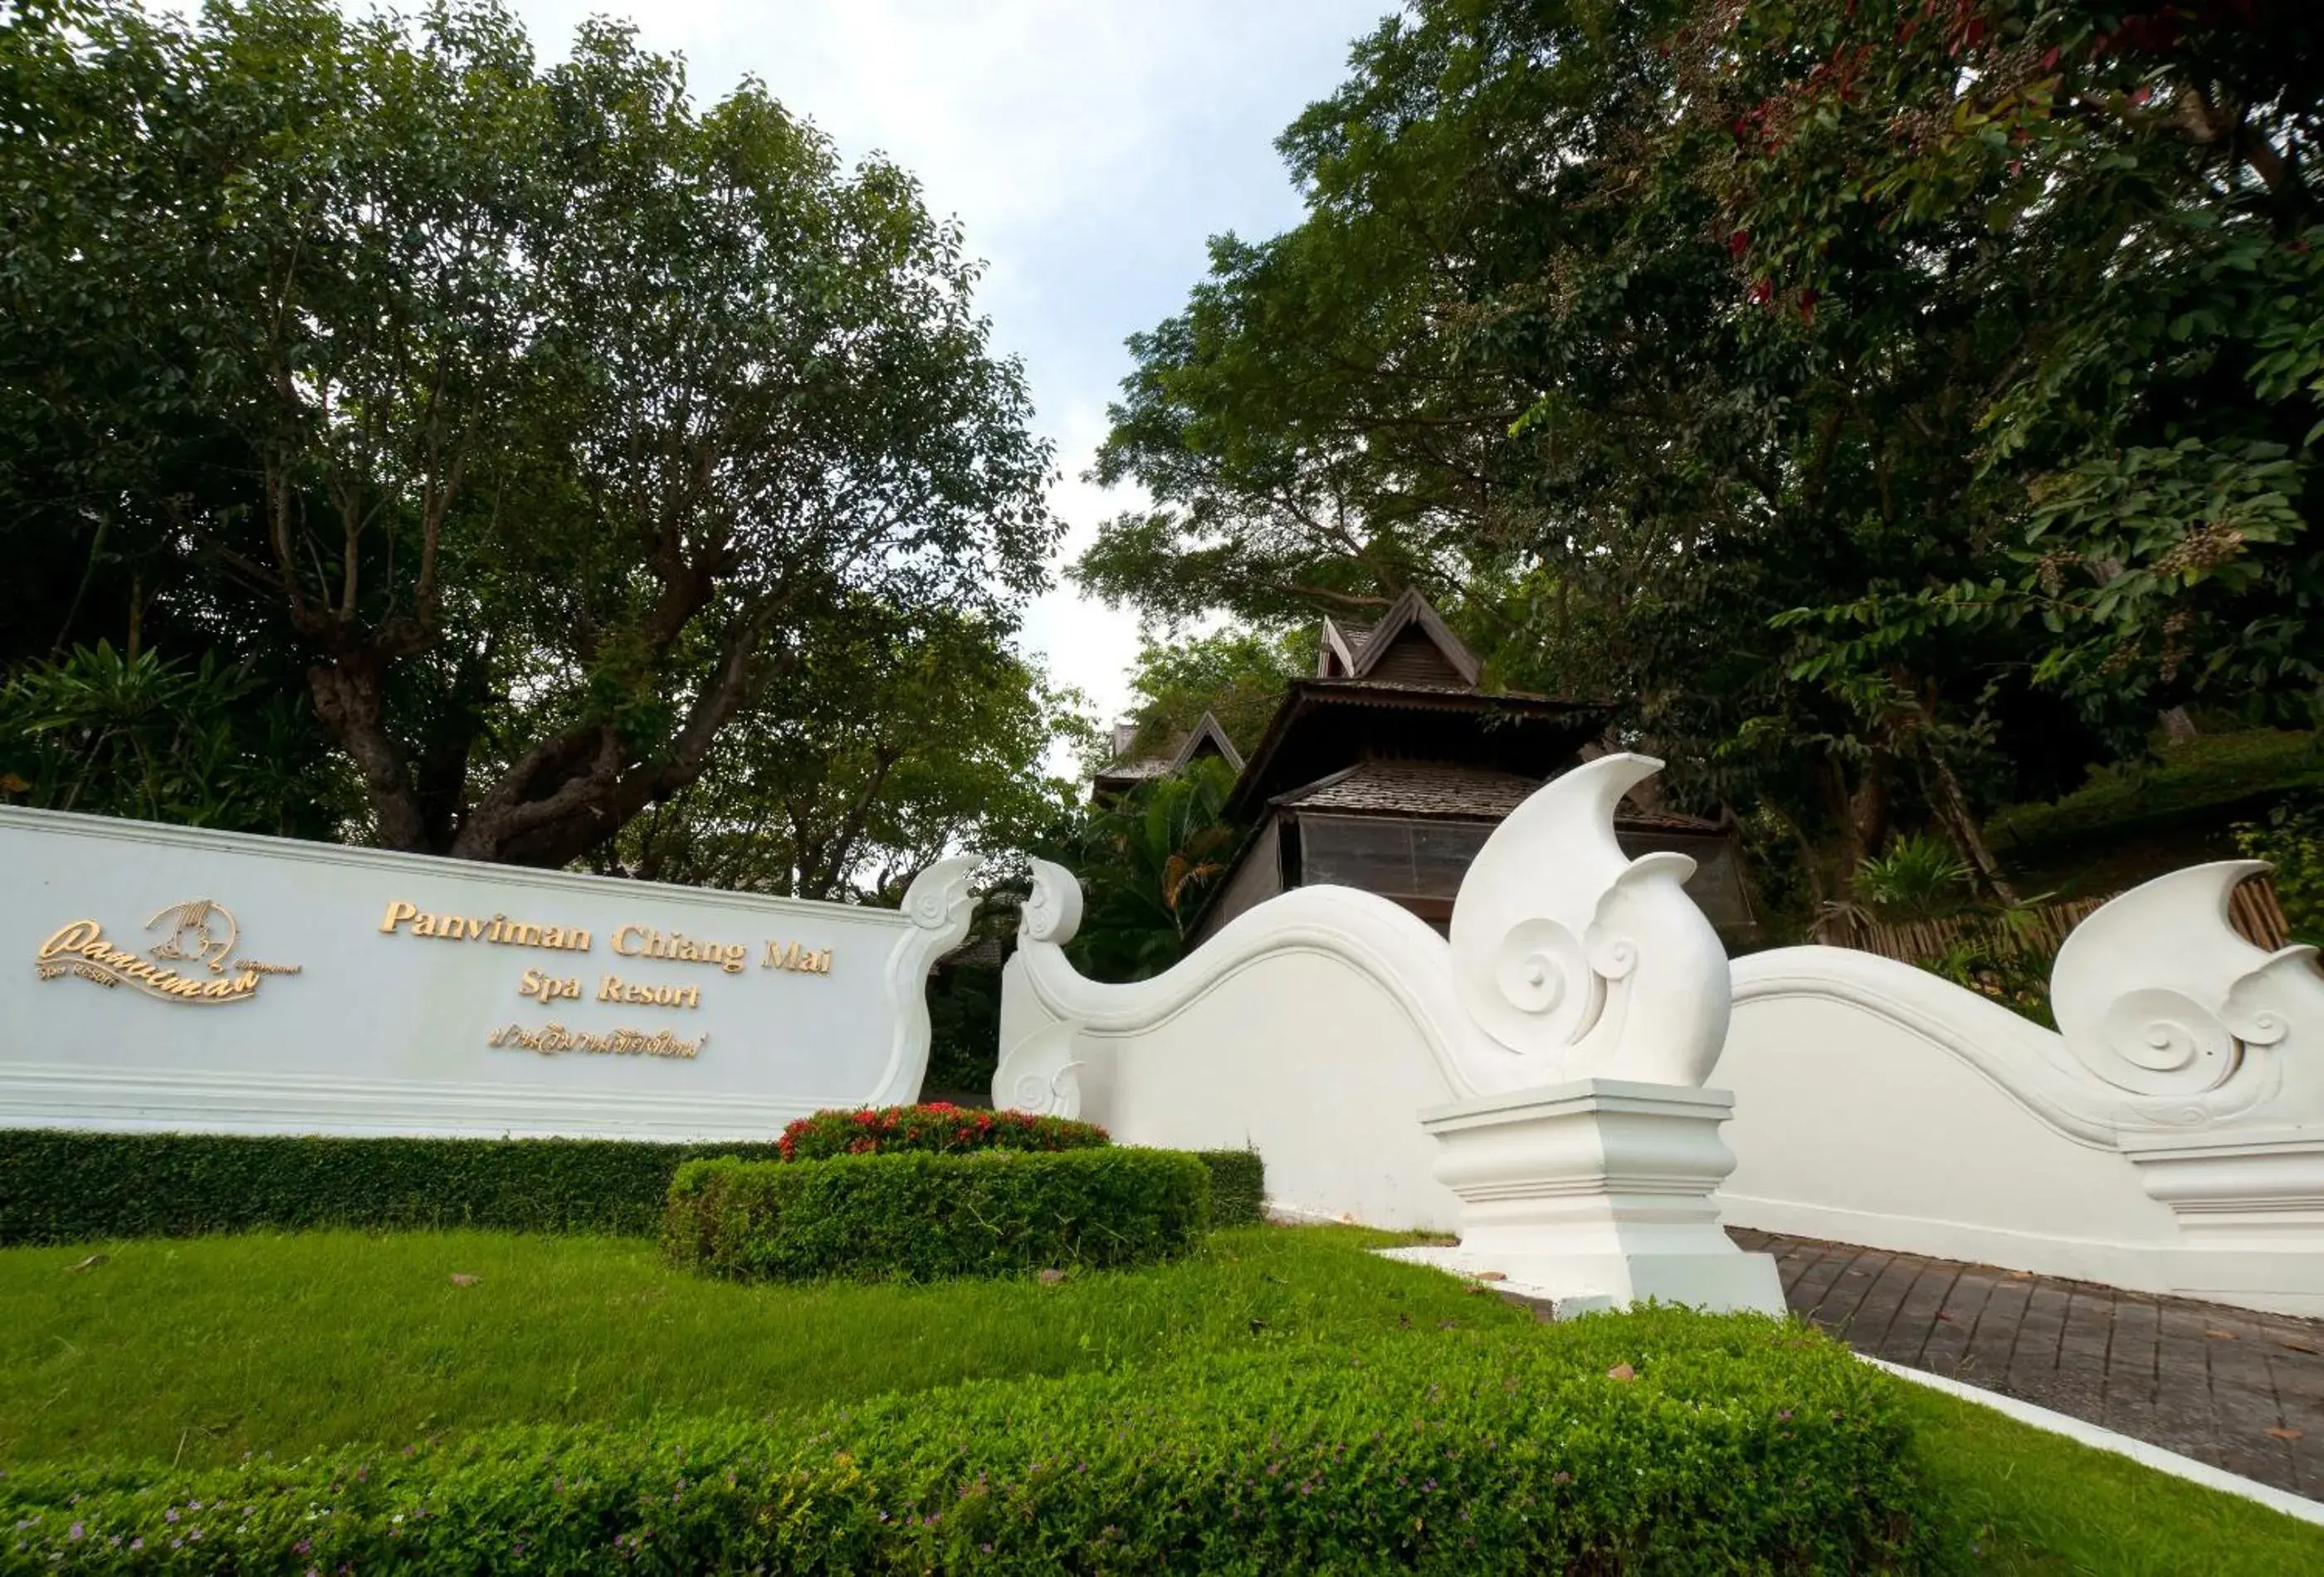 Property building in Panviman Chiang Mai Spa Resort